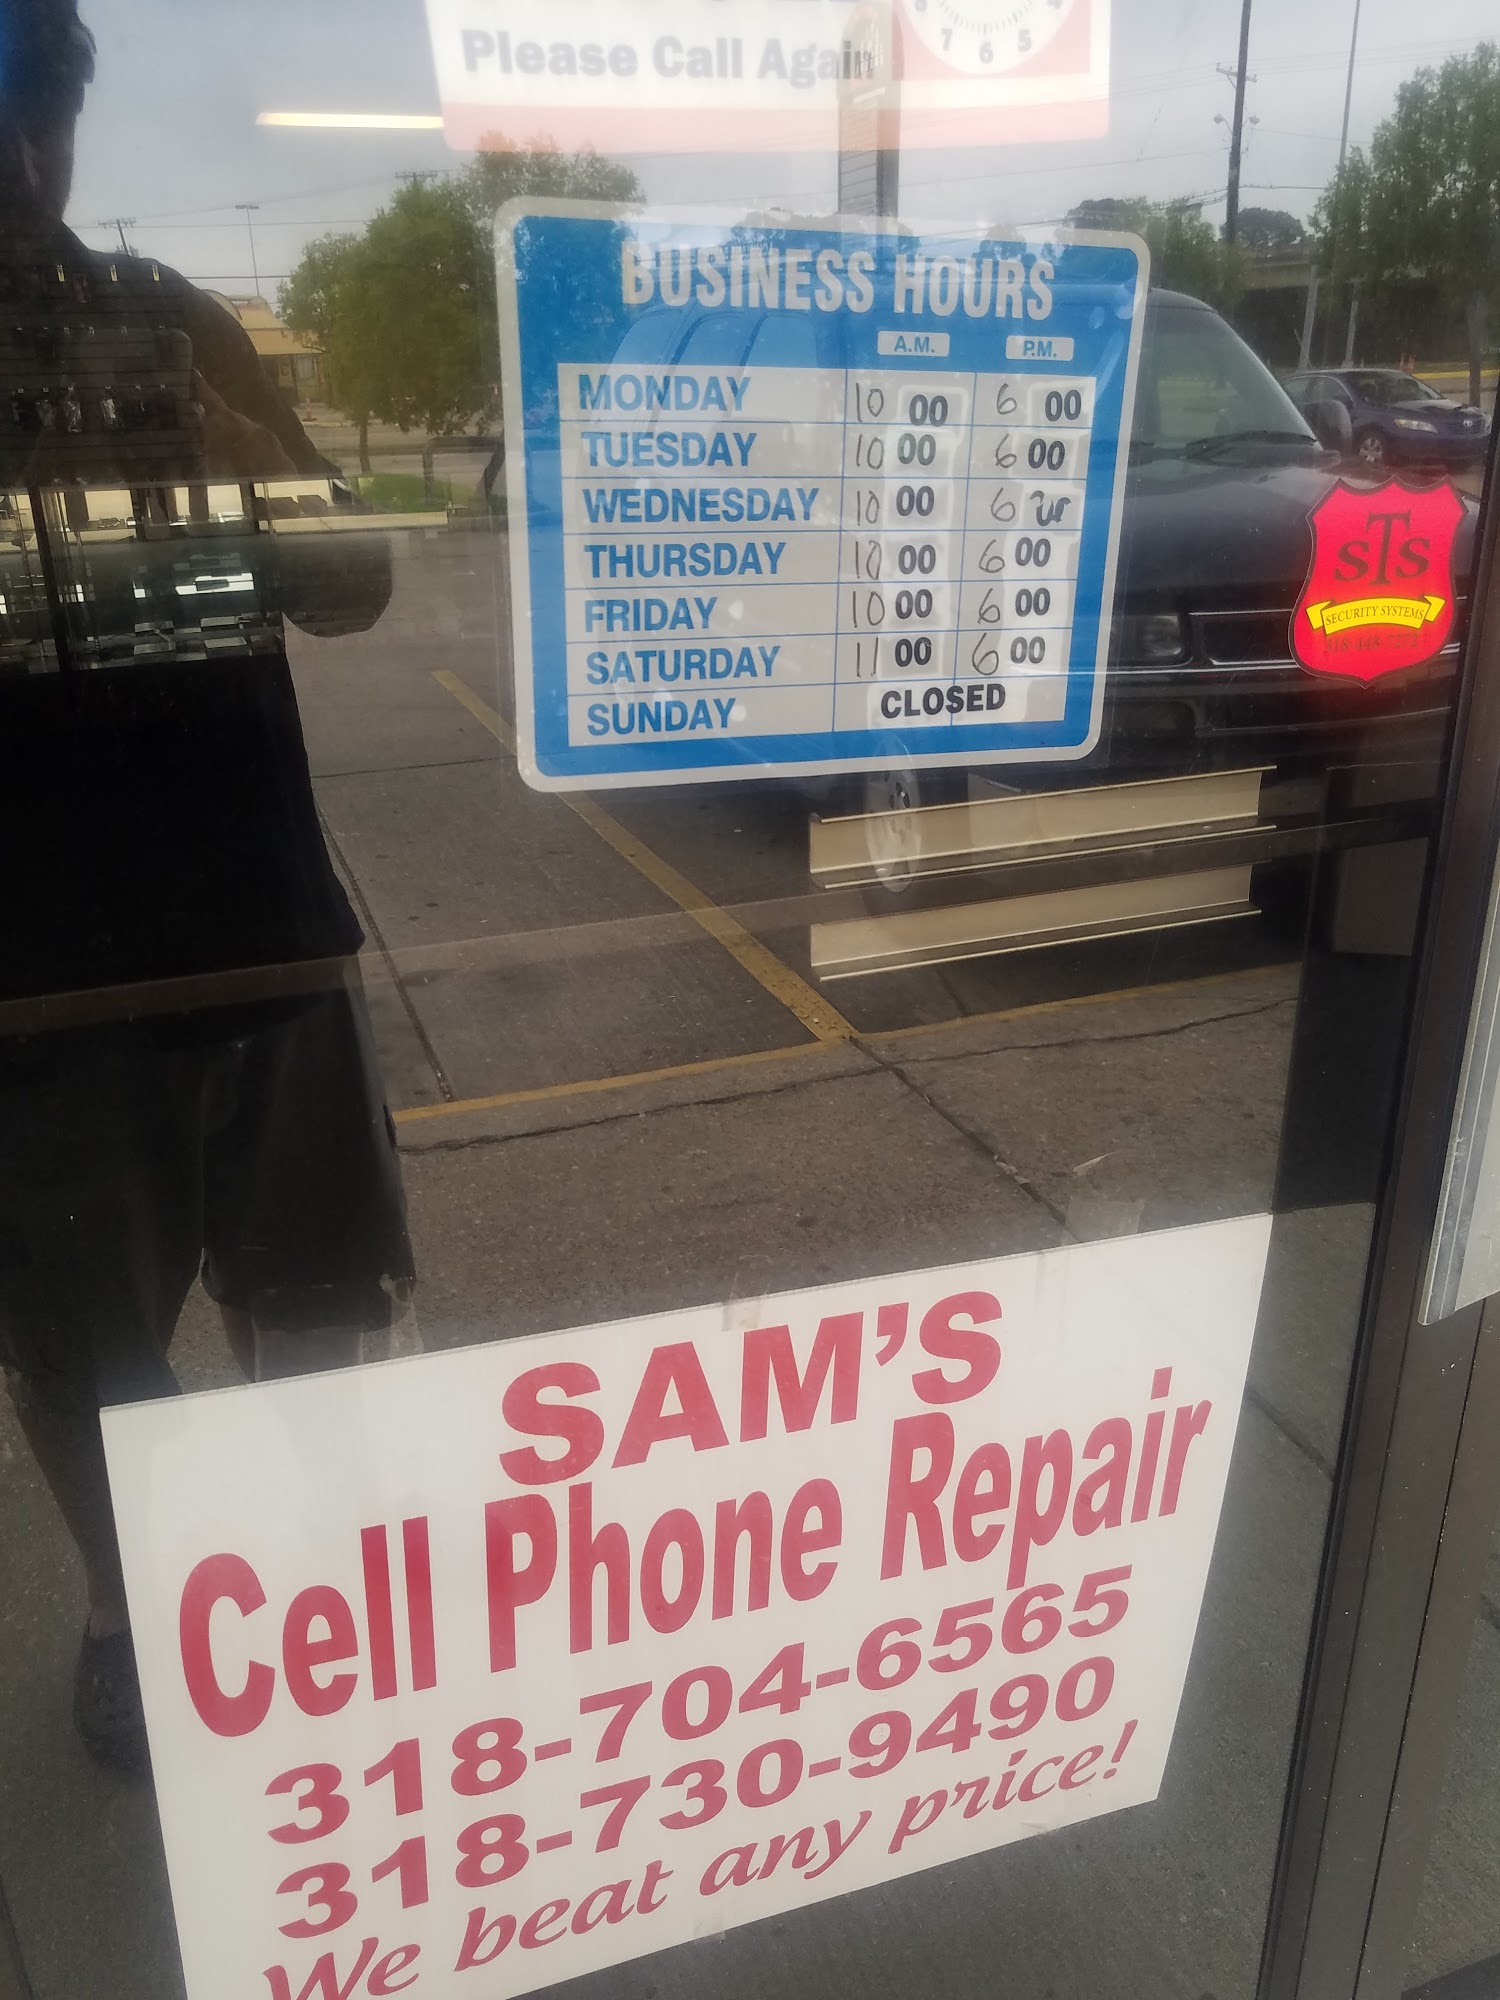 Sam's Cell Phone Repair